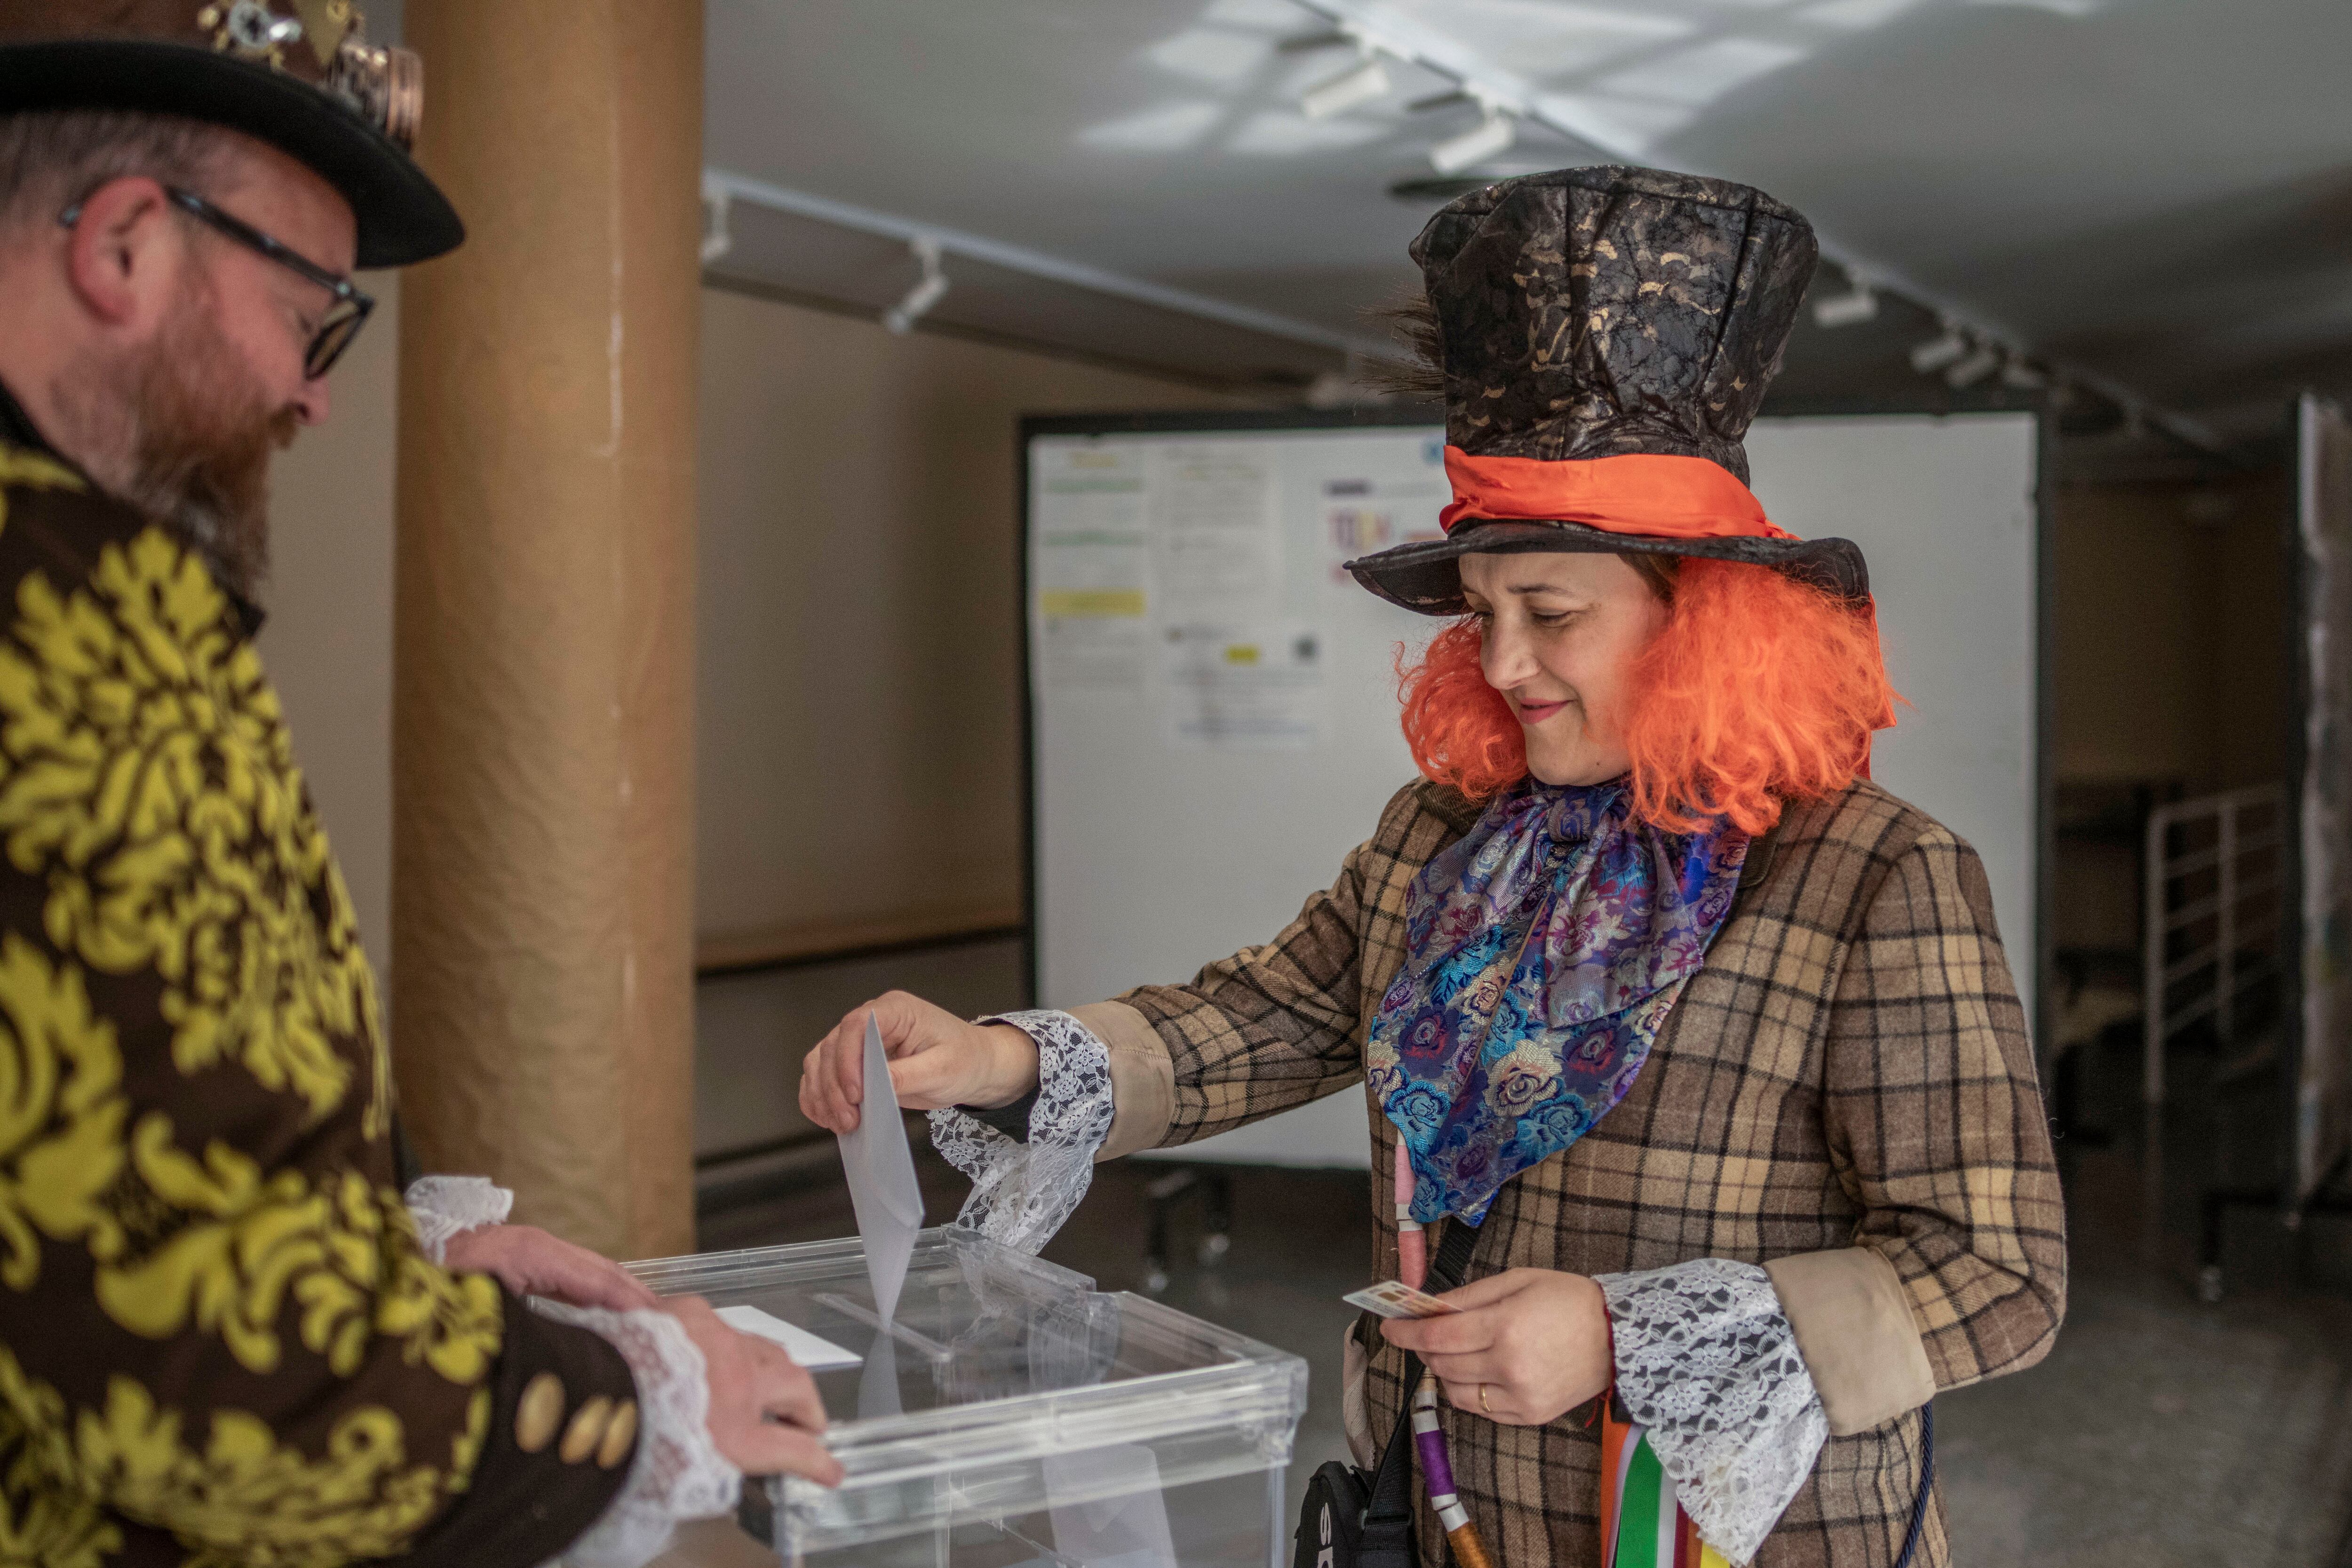 Una persona disfrazada votaba en un colegio electoral en Xinzo de Limia (Ourense), este domingo, coincidiendo con las celebraciones de carnaval.